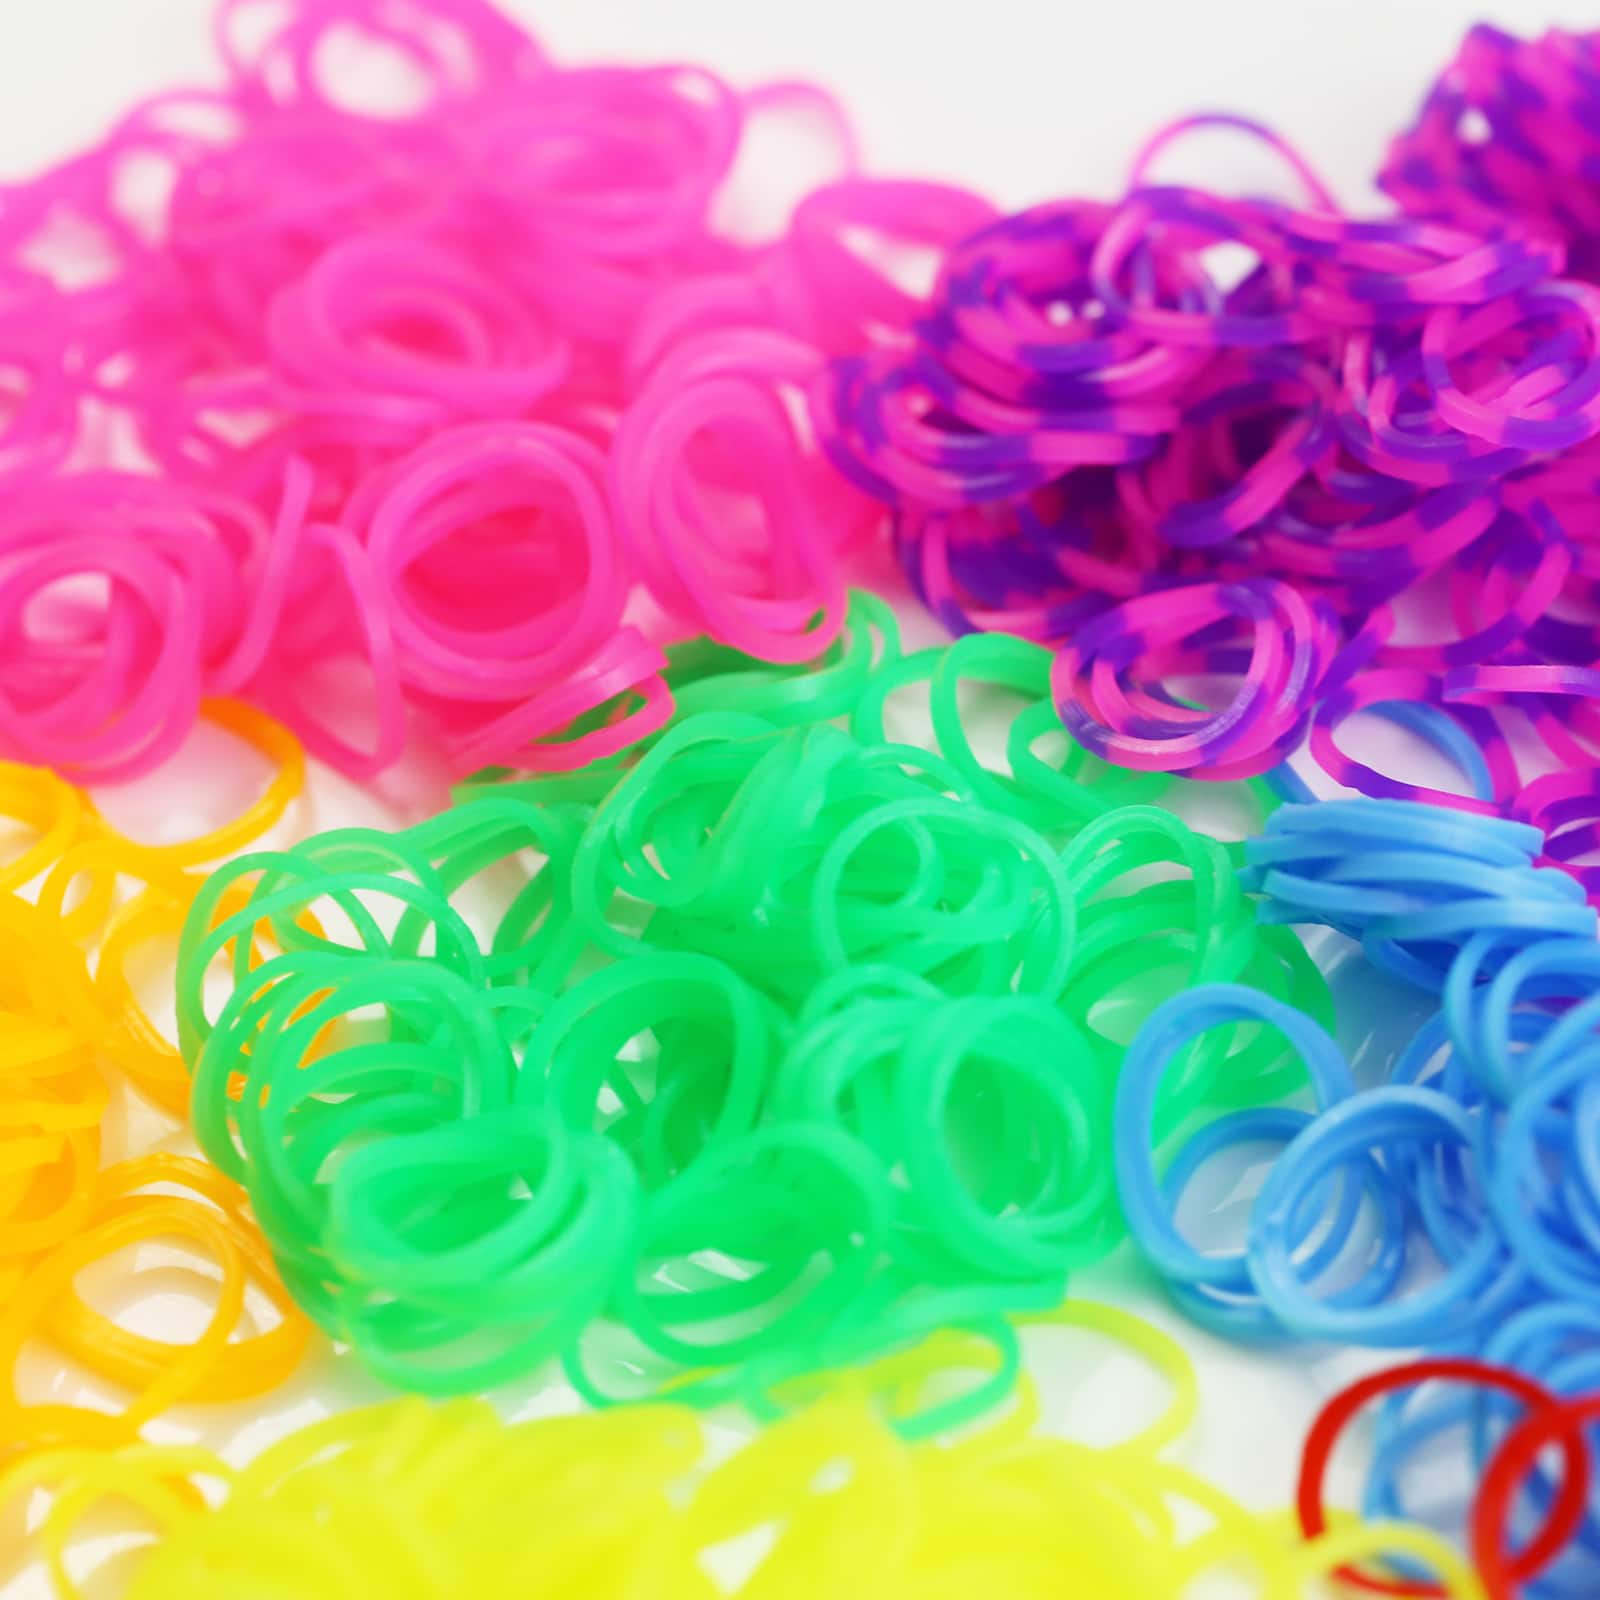 Rainbow Loom Neon Treasure Box Bracelet Making Kit | Michaels